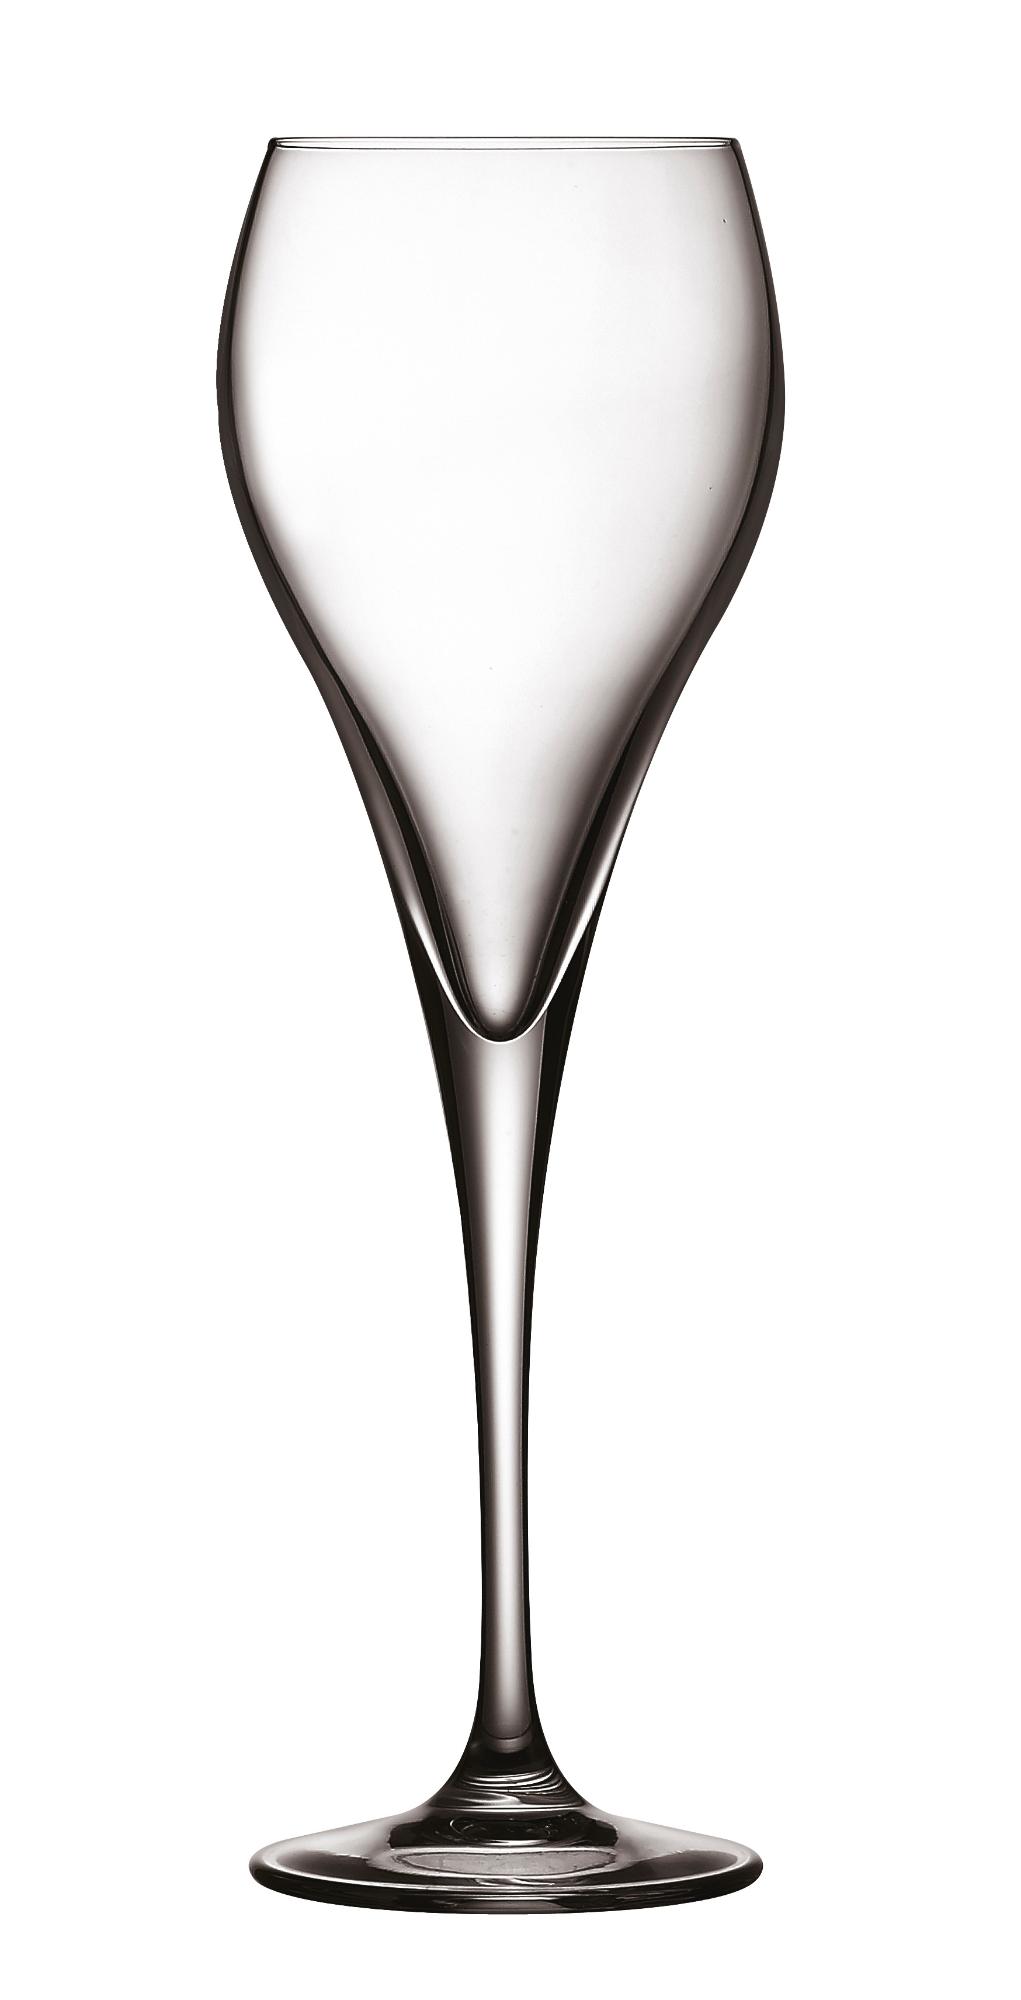 Brio Flute champagne glass, 160ml